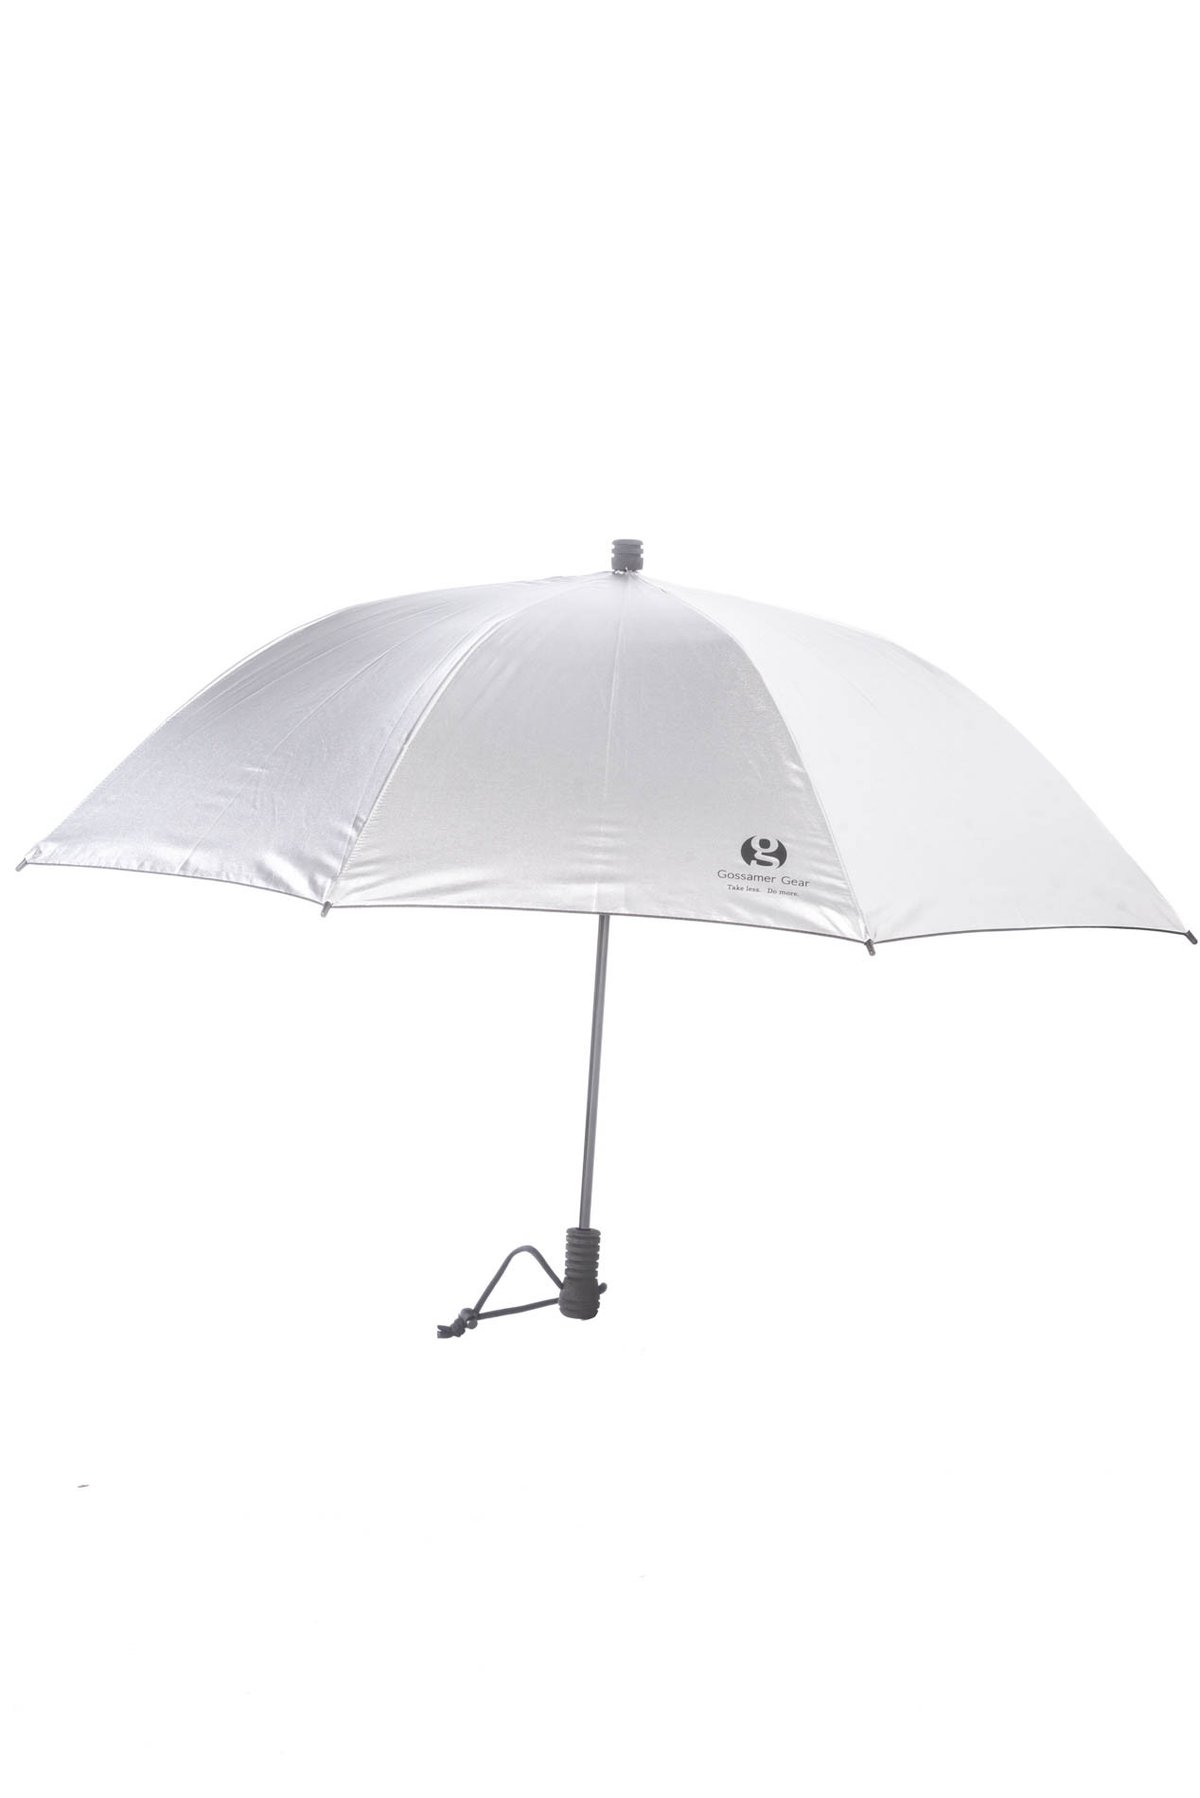 Gossamer gear Liteflex umbrella - Backpackinglight.dk